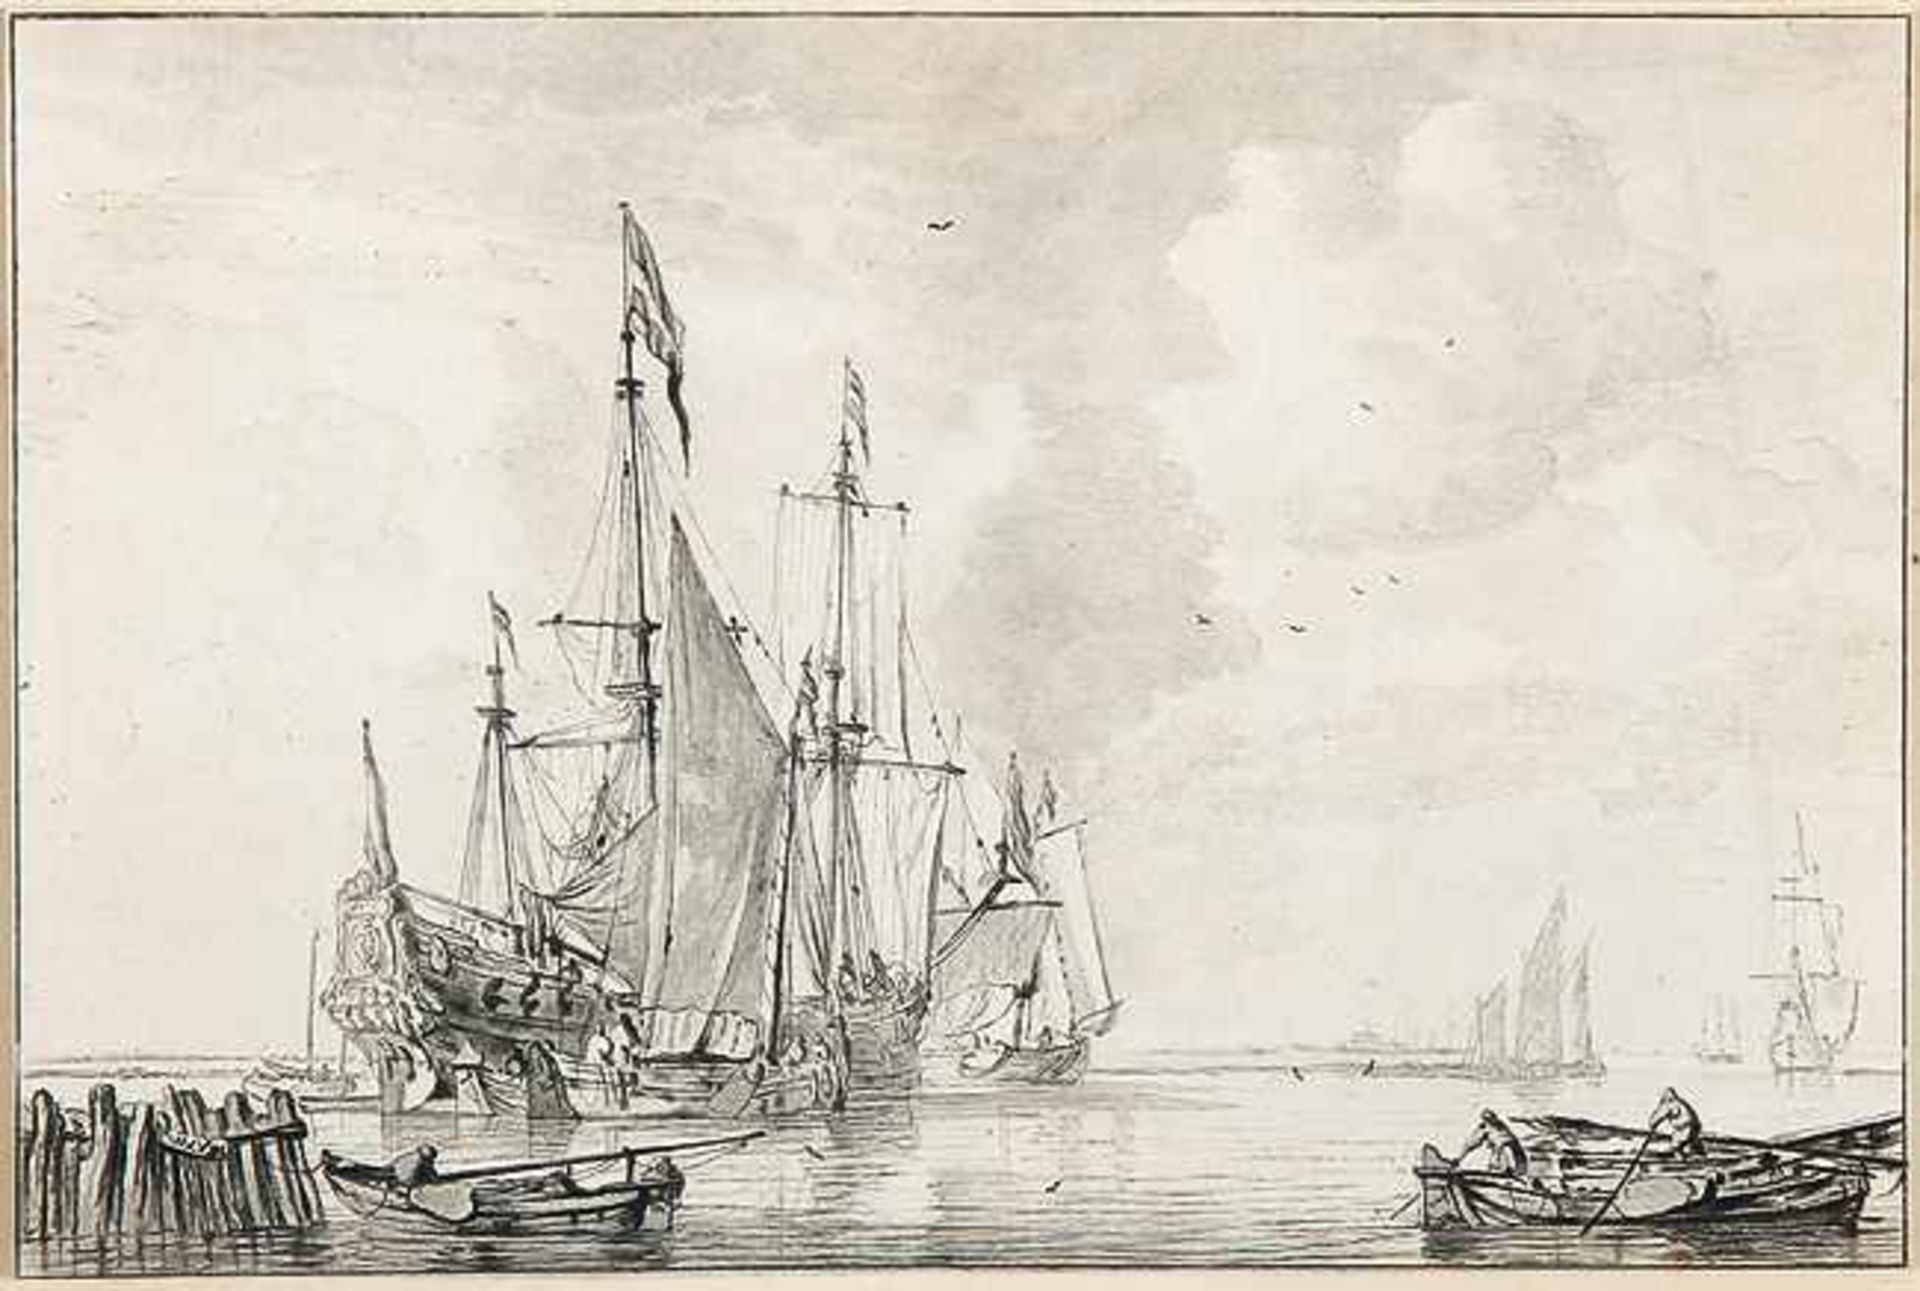 CORNELIS PLOOS VAN AMSTEL Weesp 1726 - 1798 AmsterdamSegelschiff. Radierung, vermutlich von C.